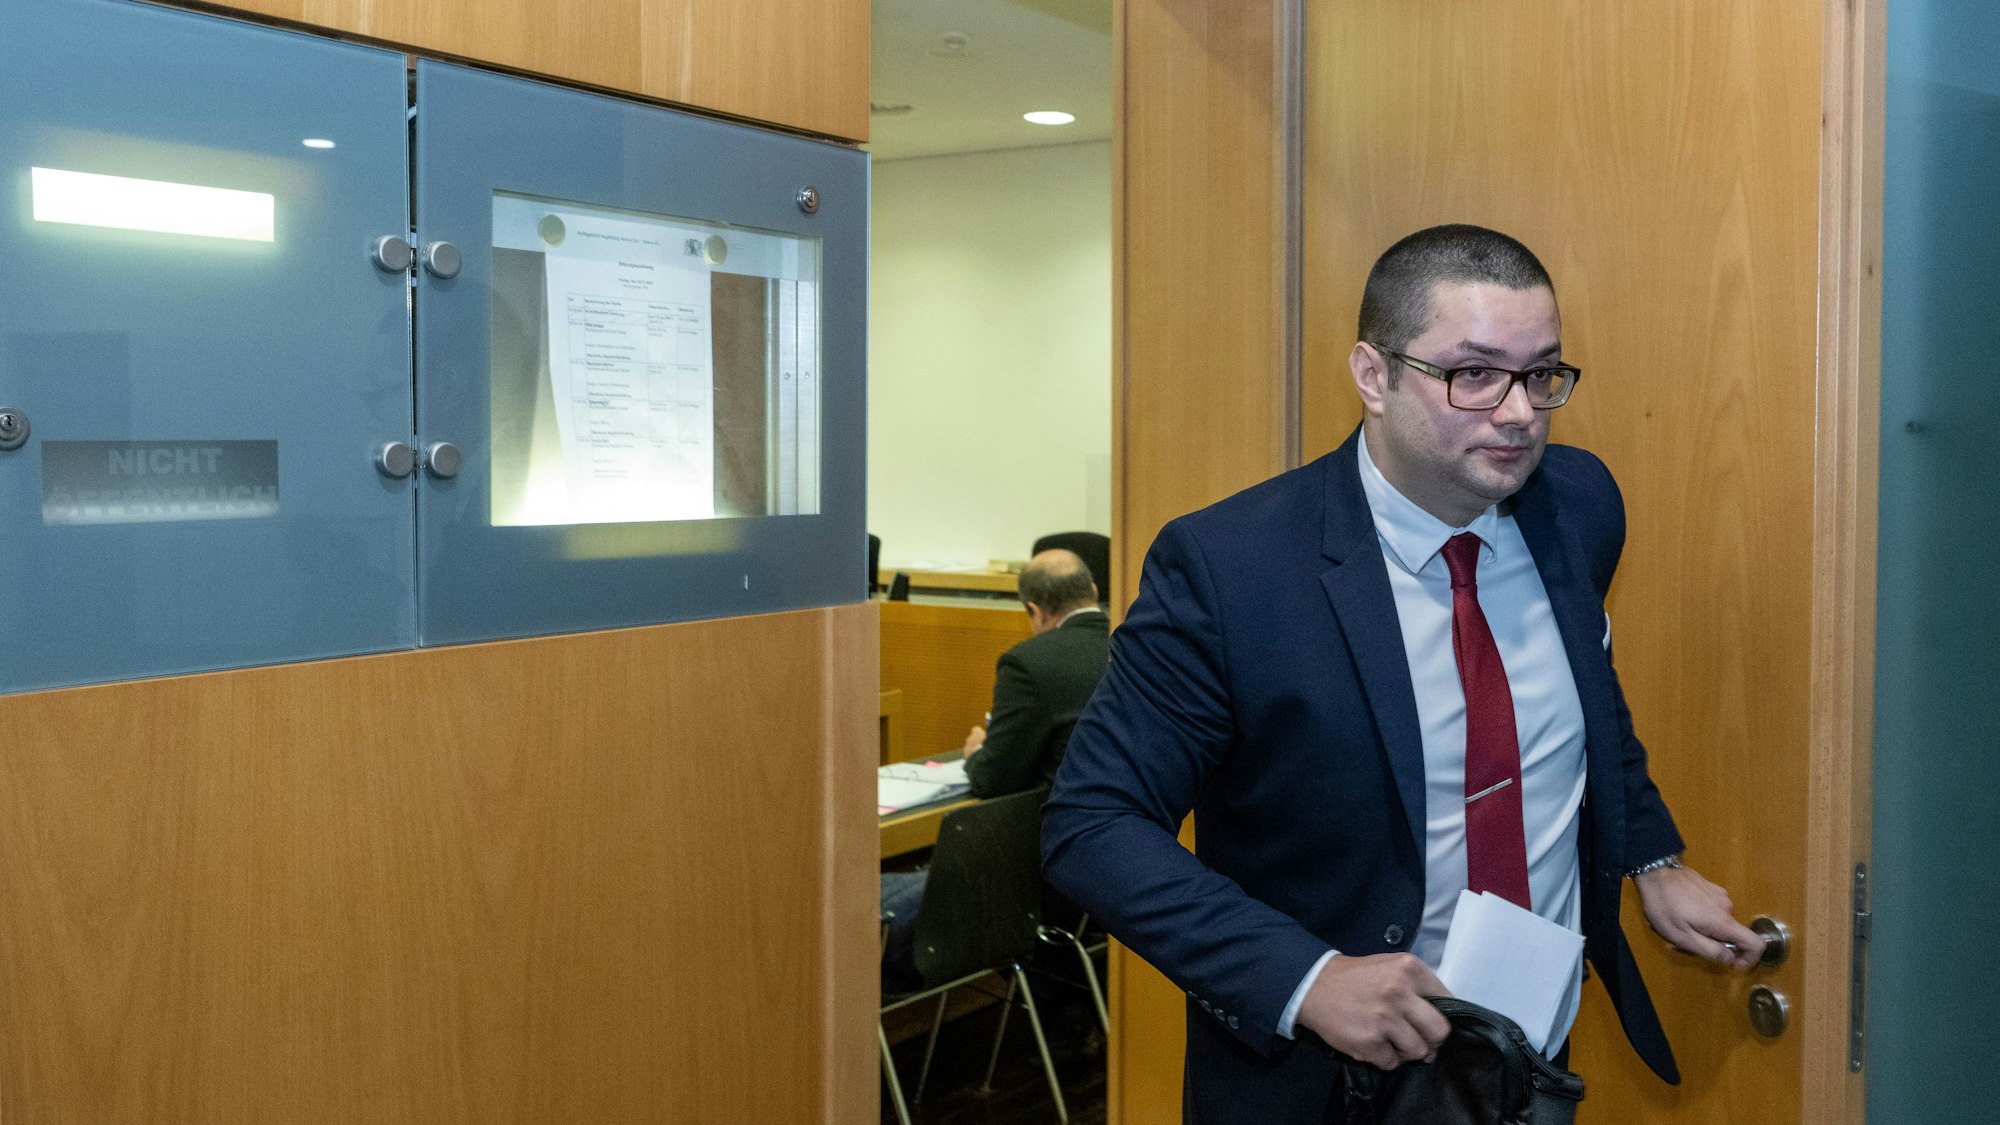 Andreas Jurca (AfD), Mitarbeiter der Landtagsfraktion, verlässt im Augsburger Strafjustizzentrum einen Gerichtssaal, nachdem er in einem Prozess als Zeuge ausgesagt hatte. Der 35-Jährige ist nach eigenen Angaben Opfer eines gewalttätigen Angriffs geworden.